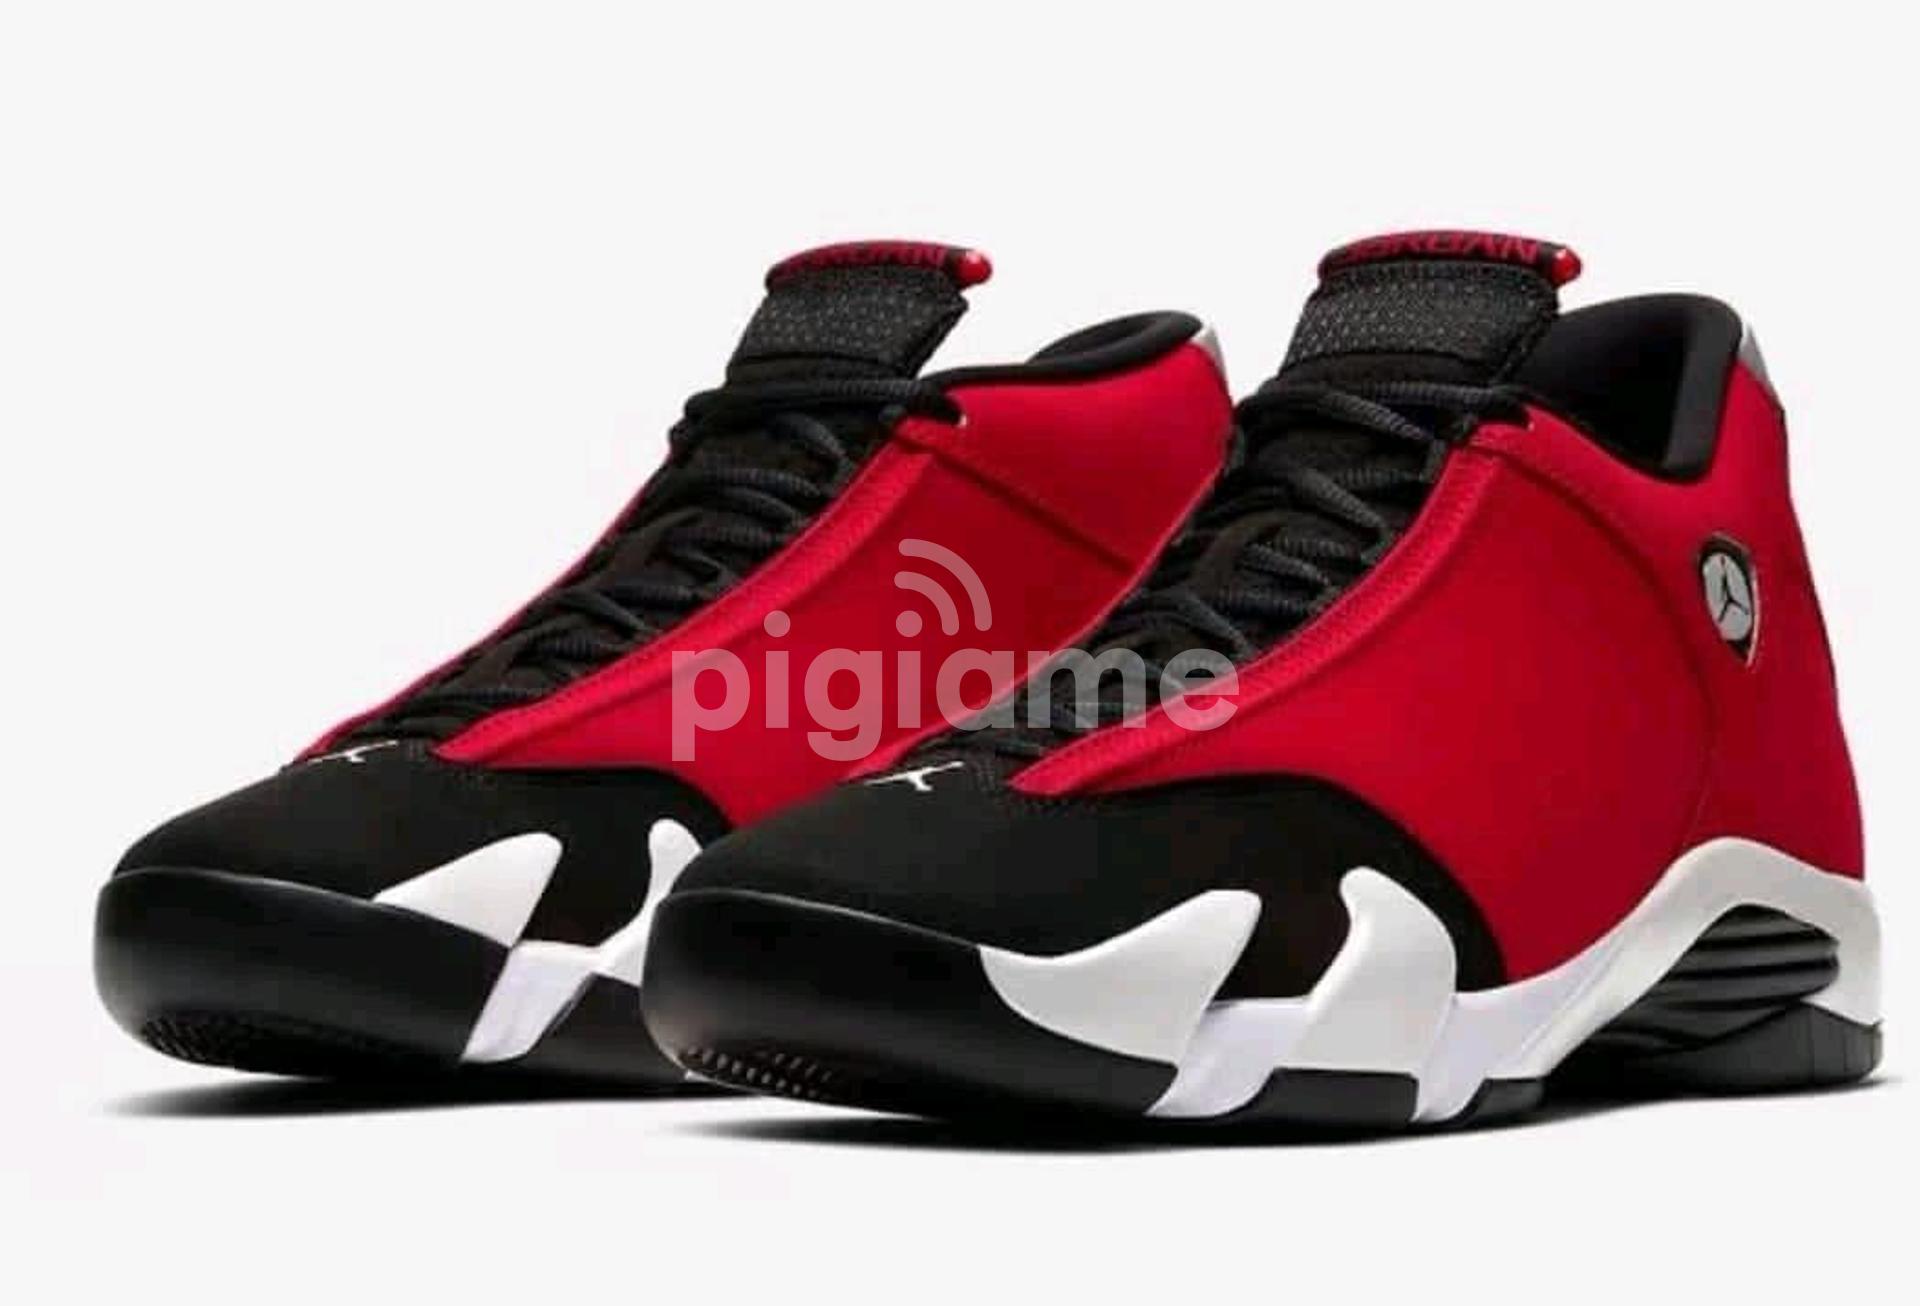 Nairobi Trendy Sneakers on X: Jordan 4 LV Size 40-45 Price Ksh